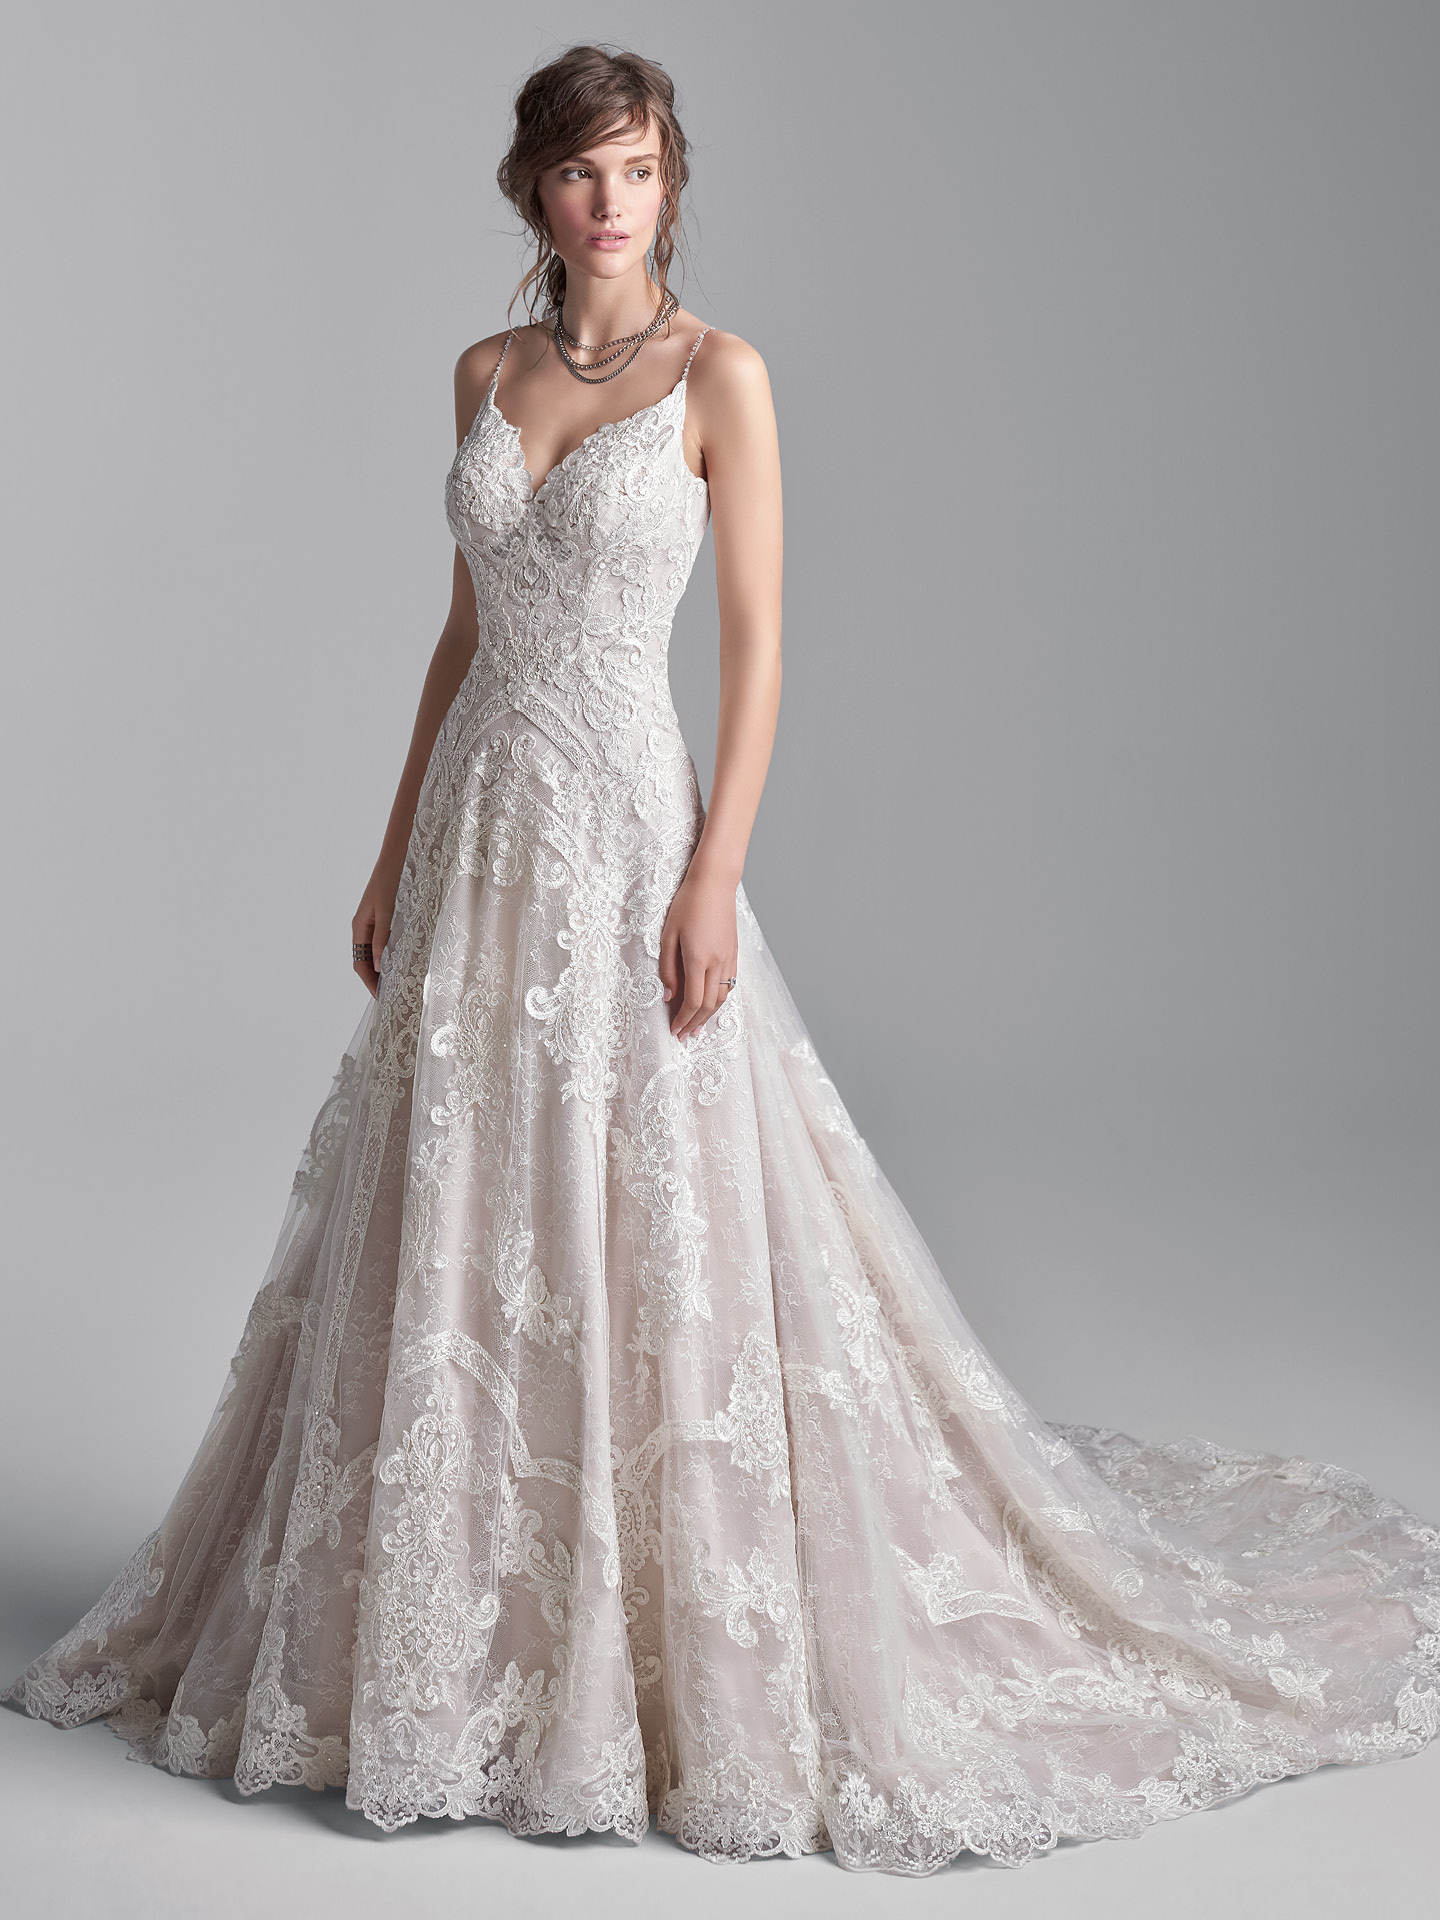 Vestido de noiva princesa VS vestido de noiva sereia: Qual escolher?